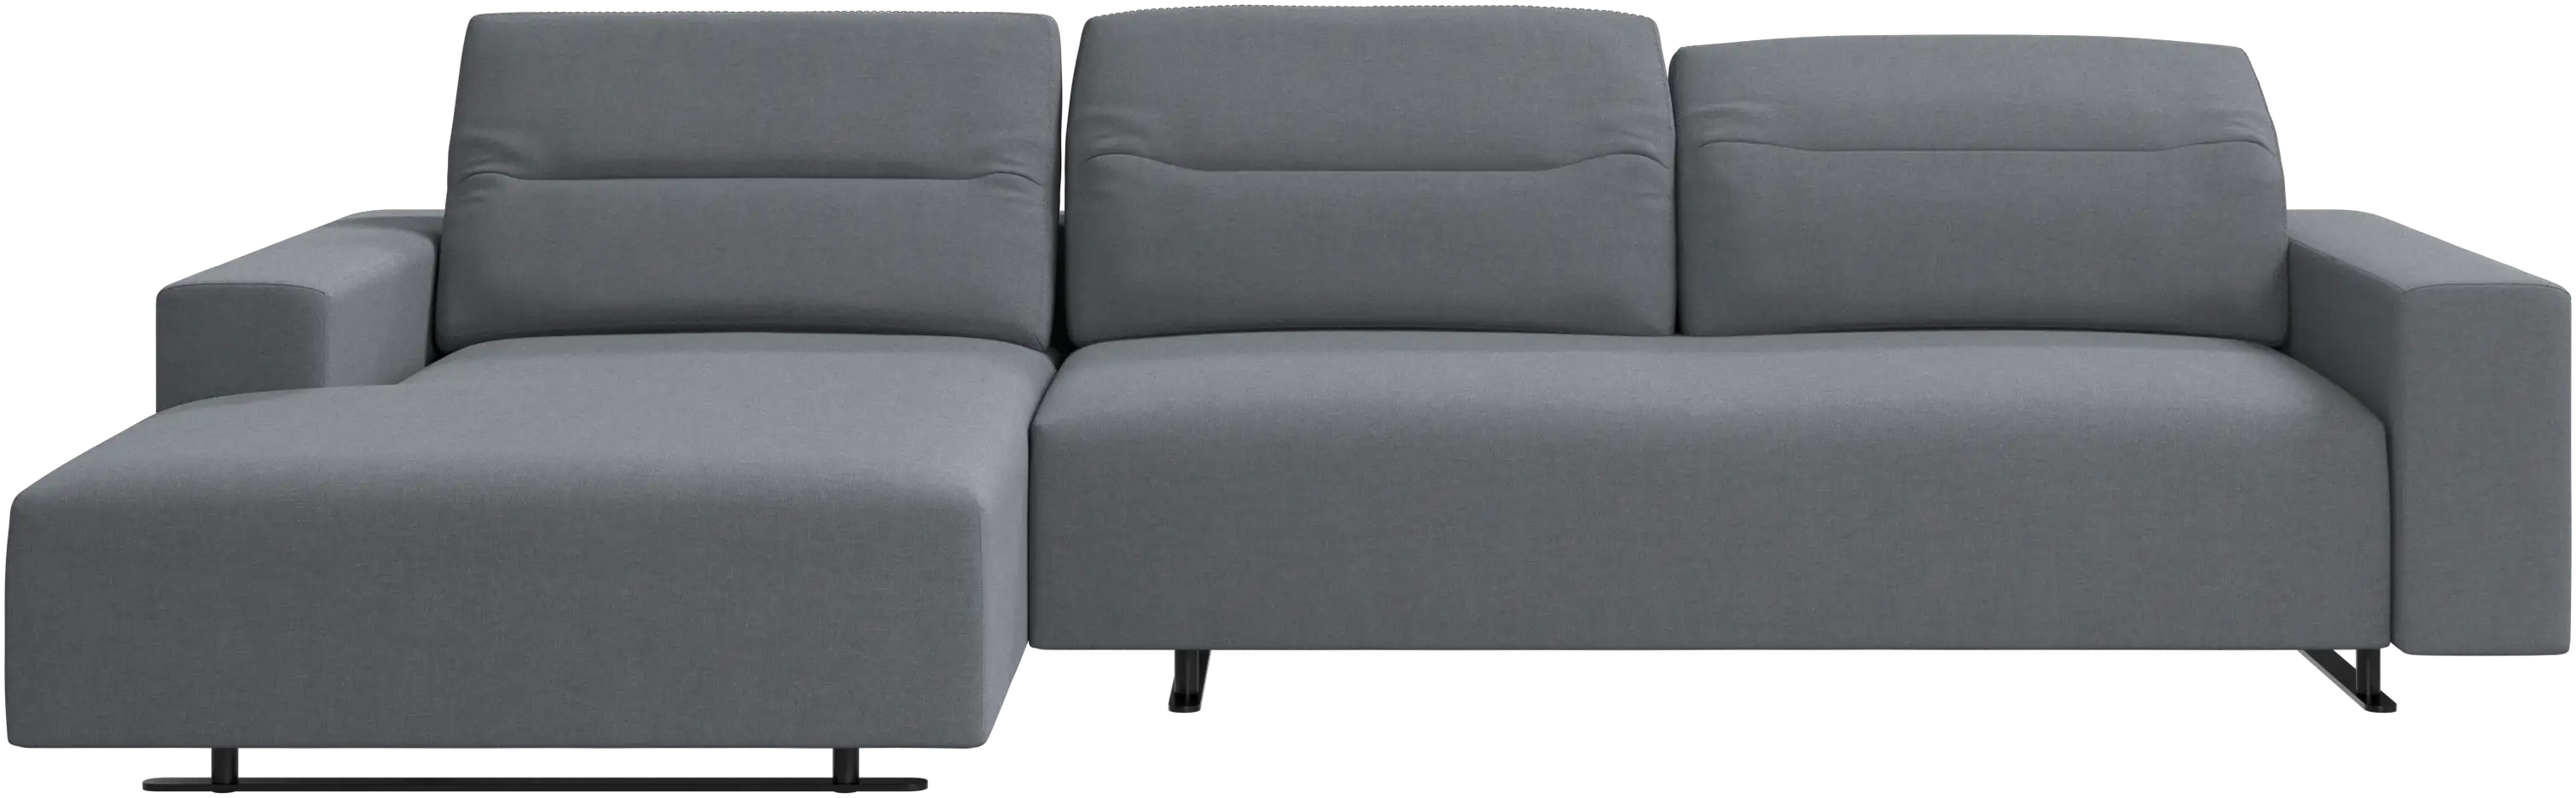 Sofá Hampton con respaldo ajustable y módulo de descanso en lado izquierdo, almacenamiento lado derecho